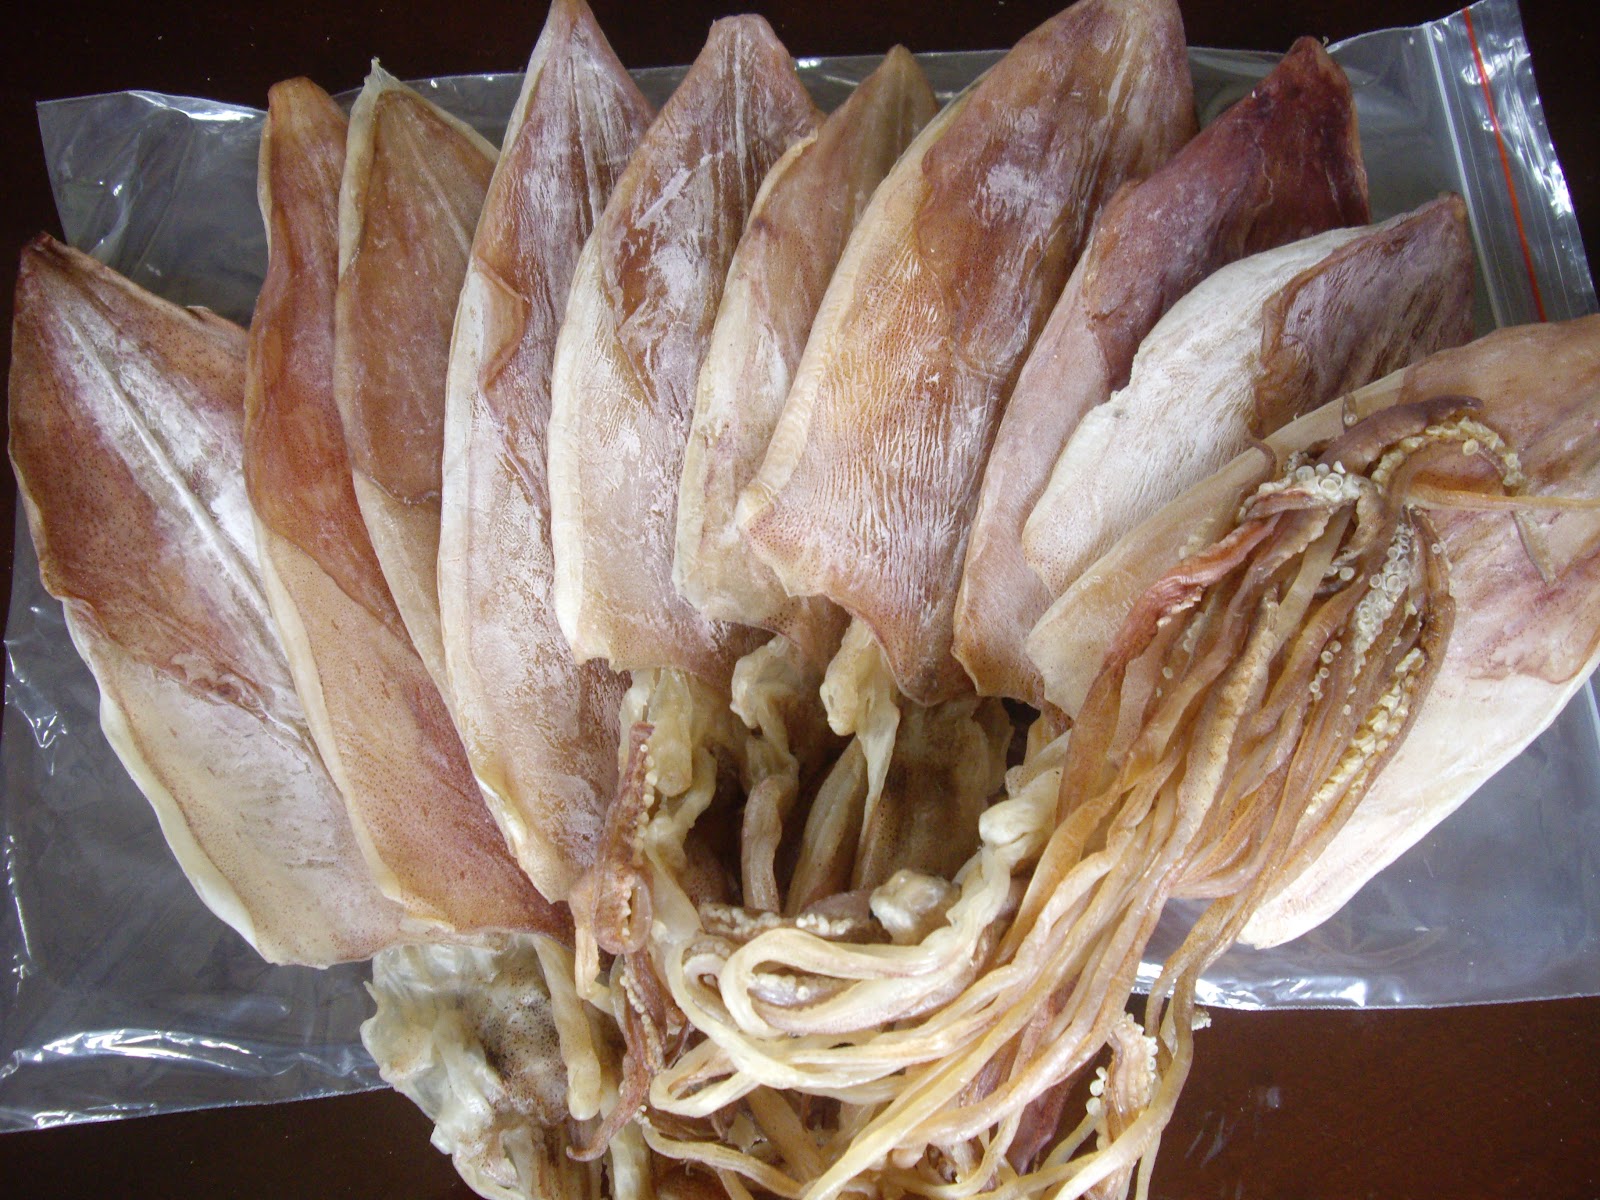 Mực khô món đặc trưng của người Việt